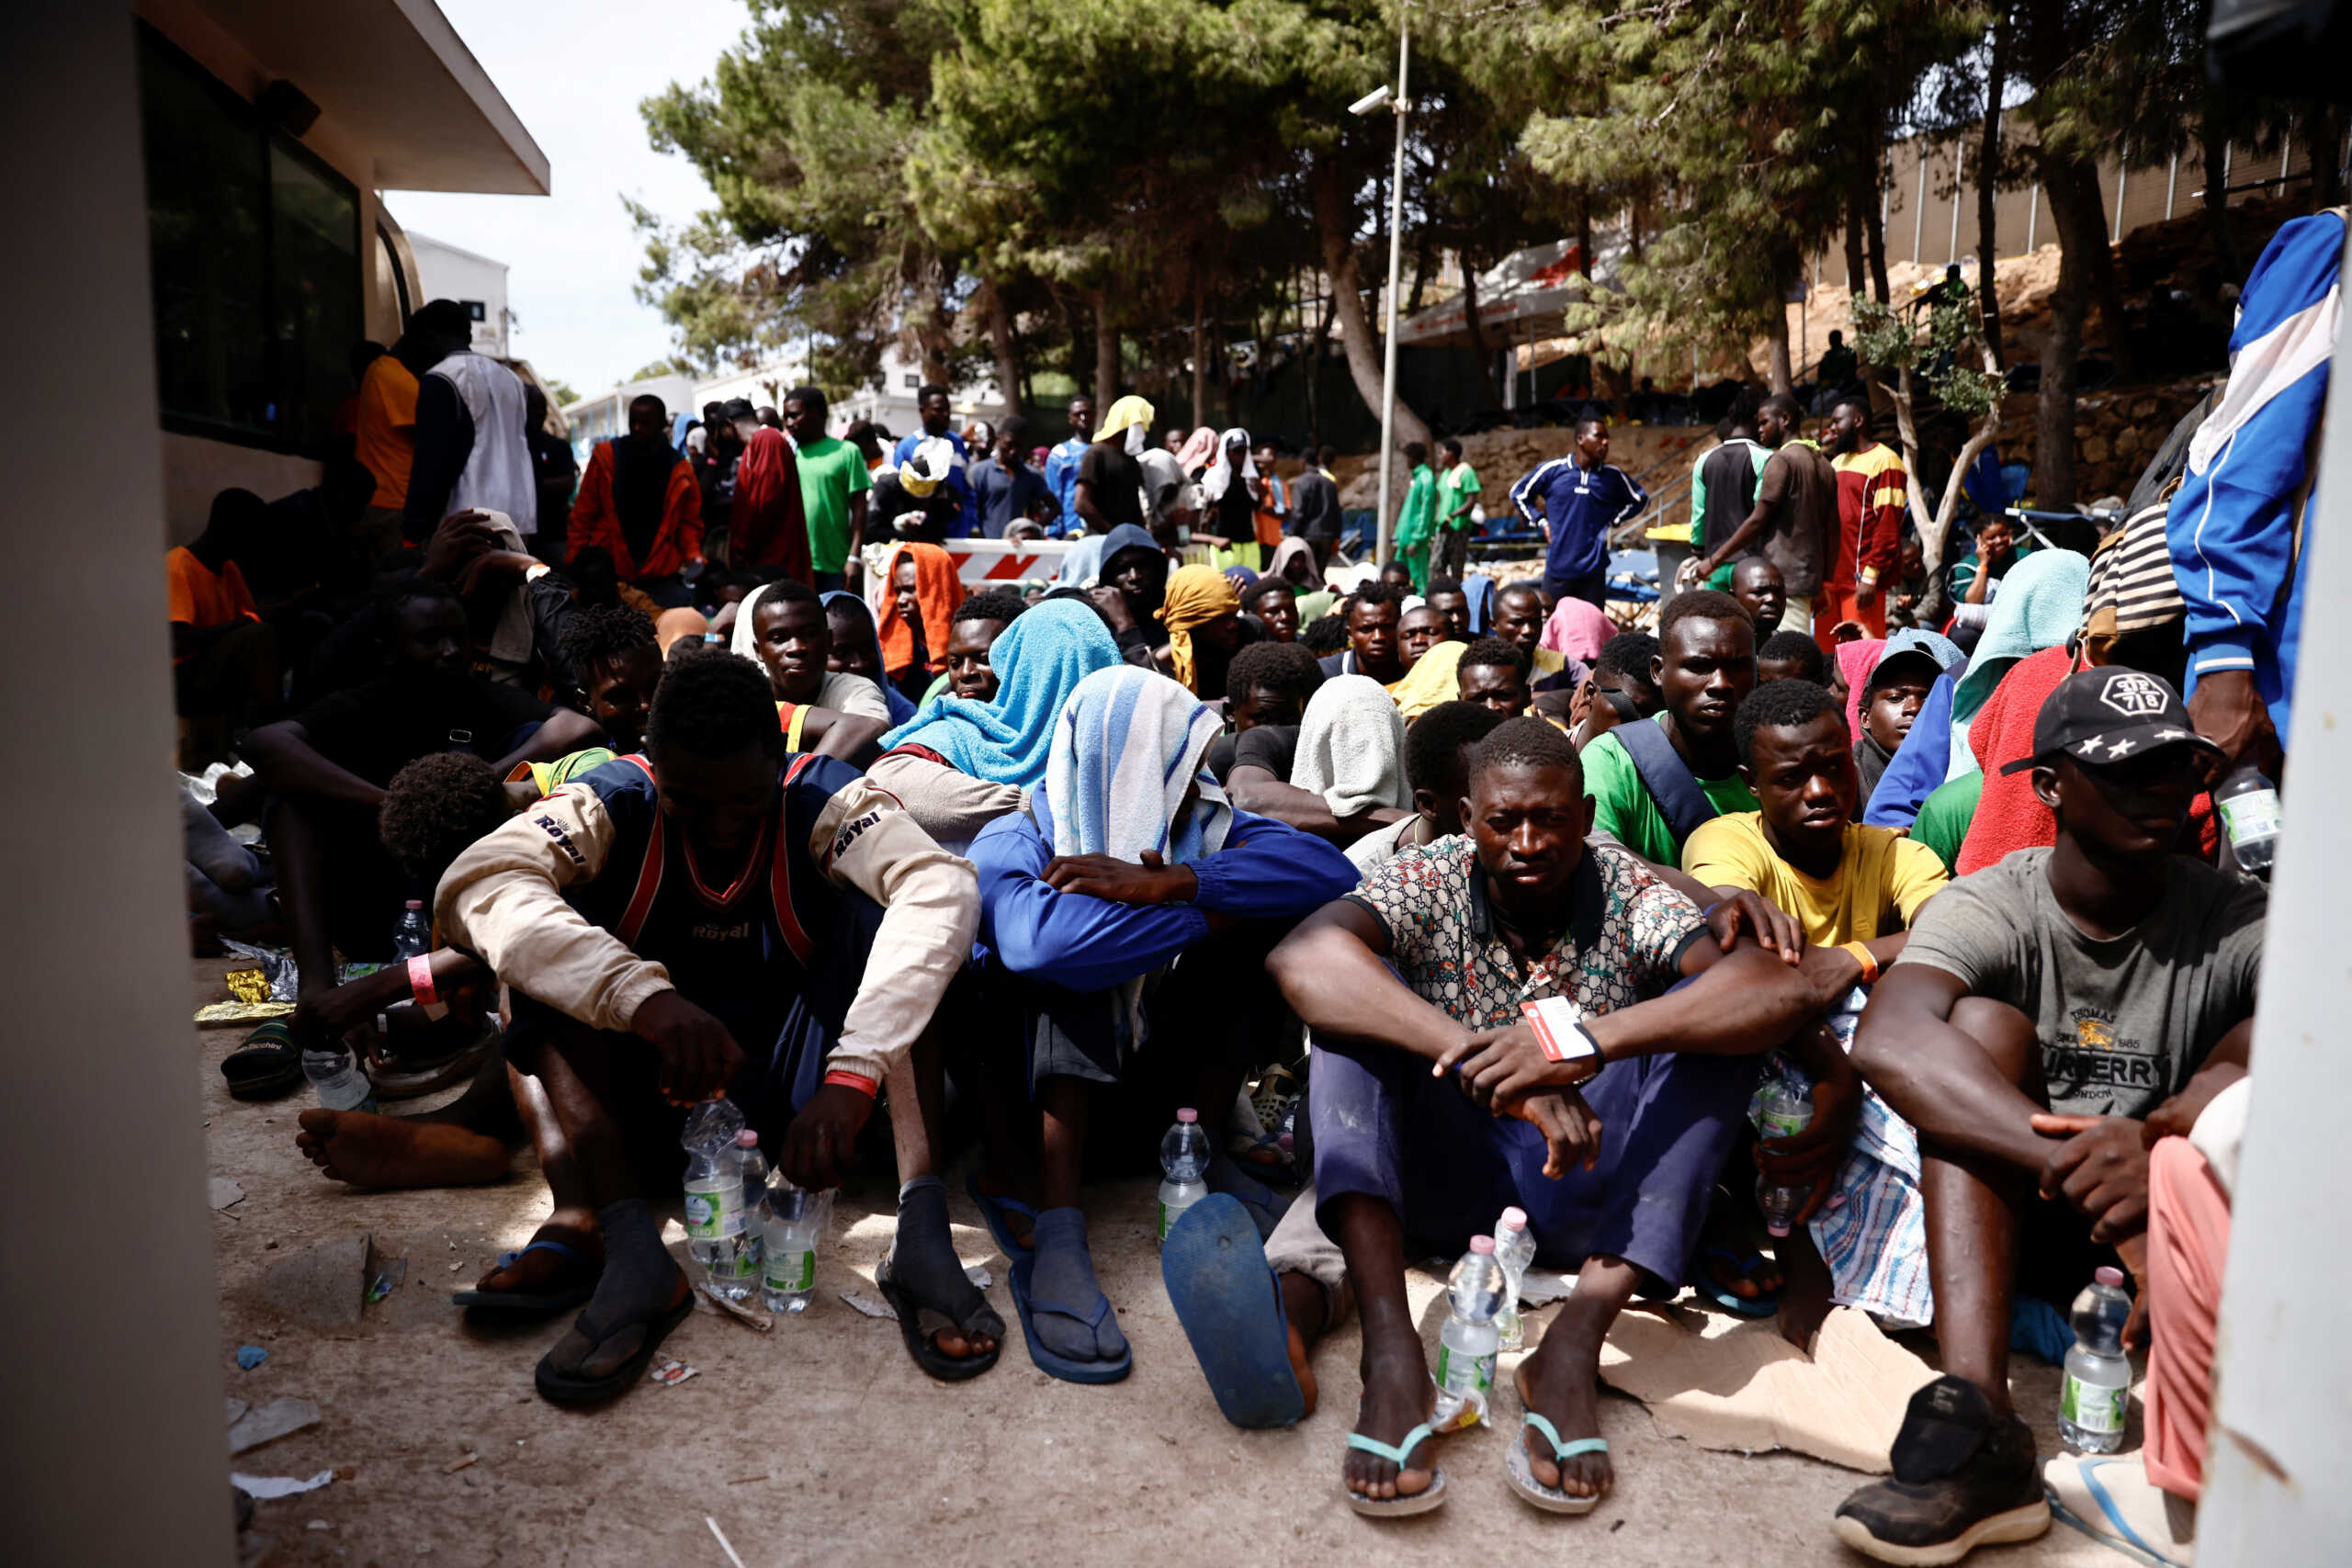 Η Γαλλία δεν θα δεχθεί μετανάστες από τη Λαμπεντούζα λέει ο υπουργός Εσωτερικών